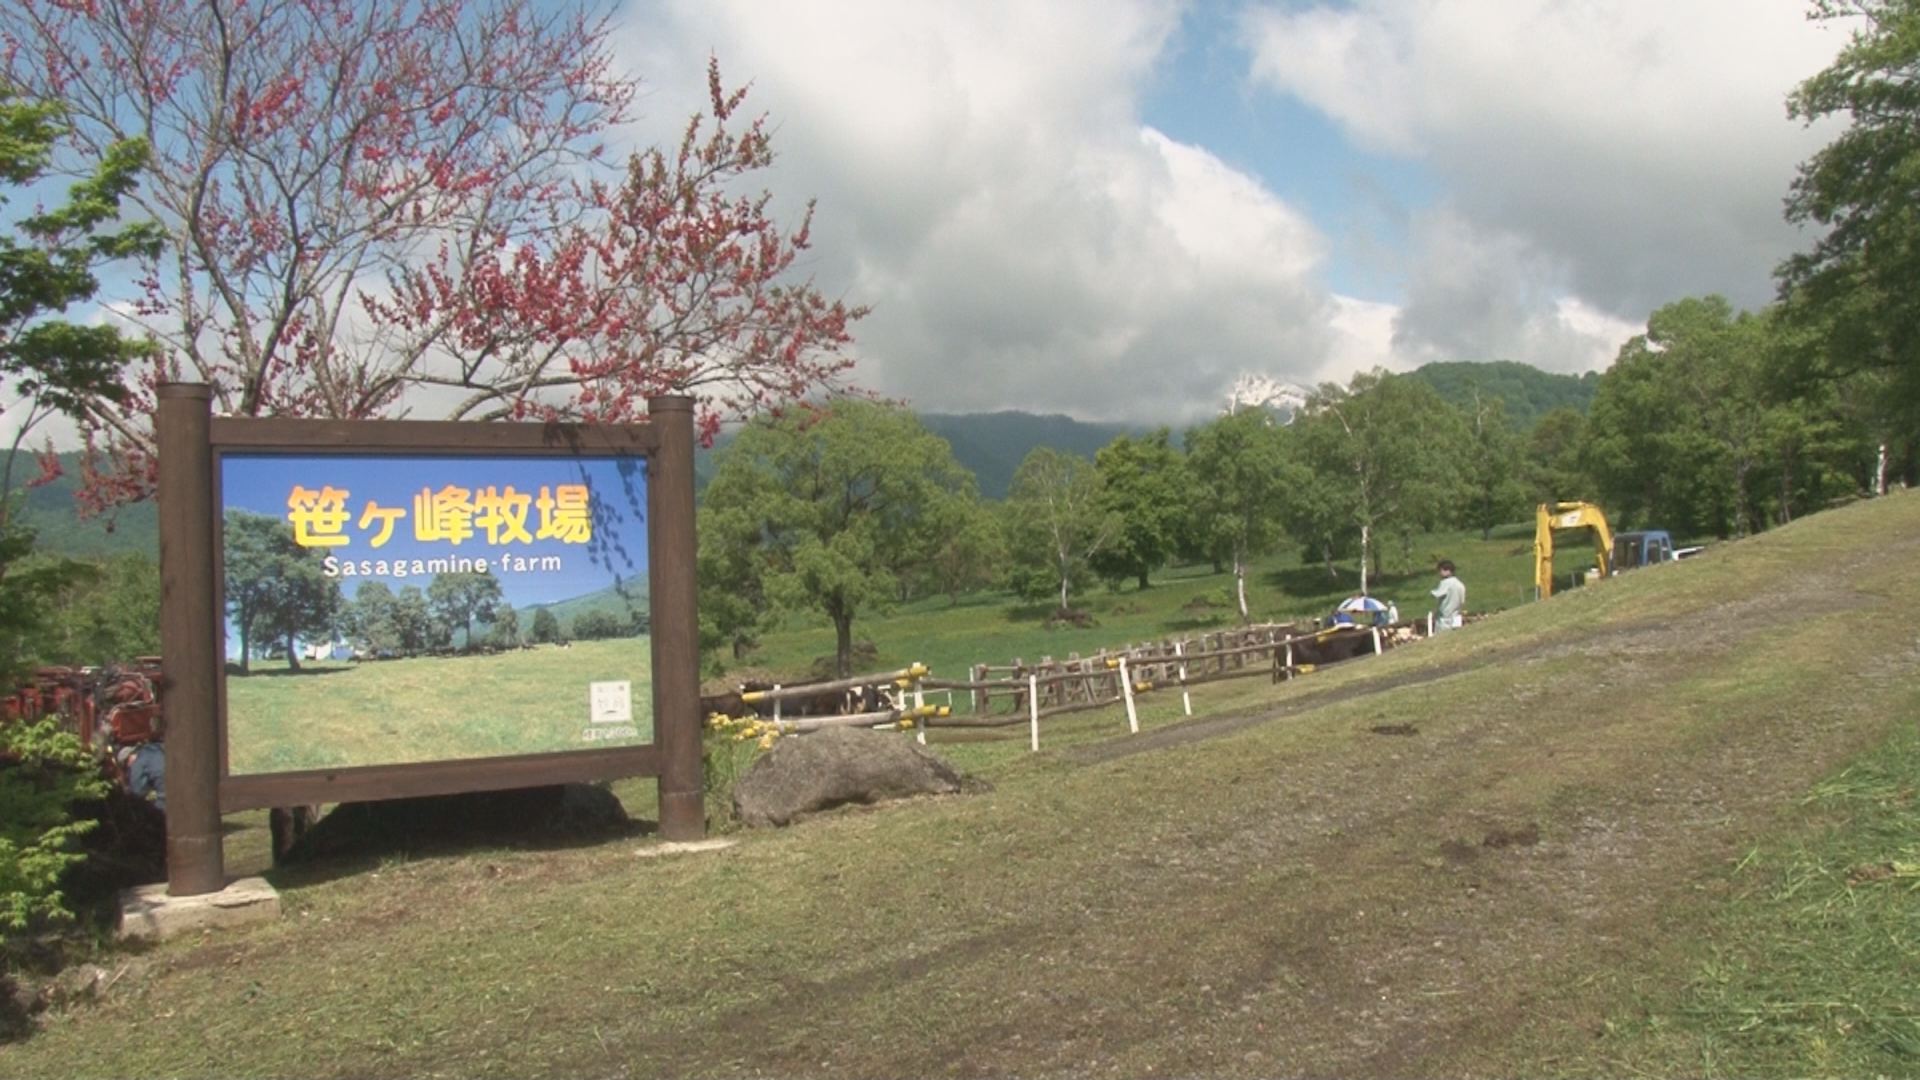 笹ヶ峰高原 牛の放牧はじまる ニュース 上越妙高タウン情報